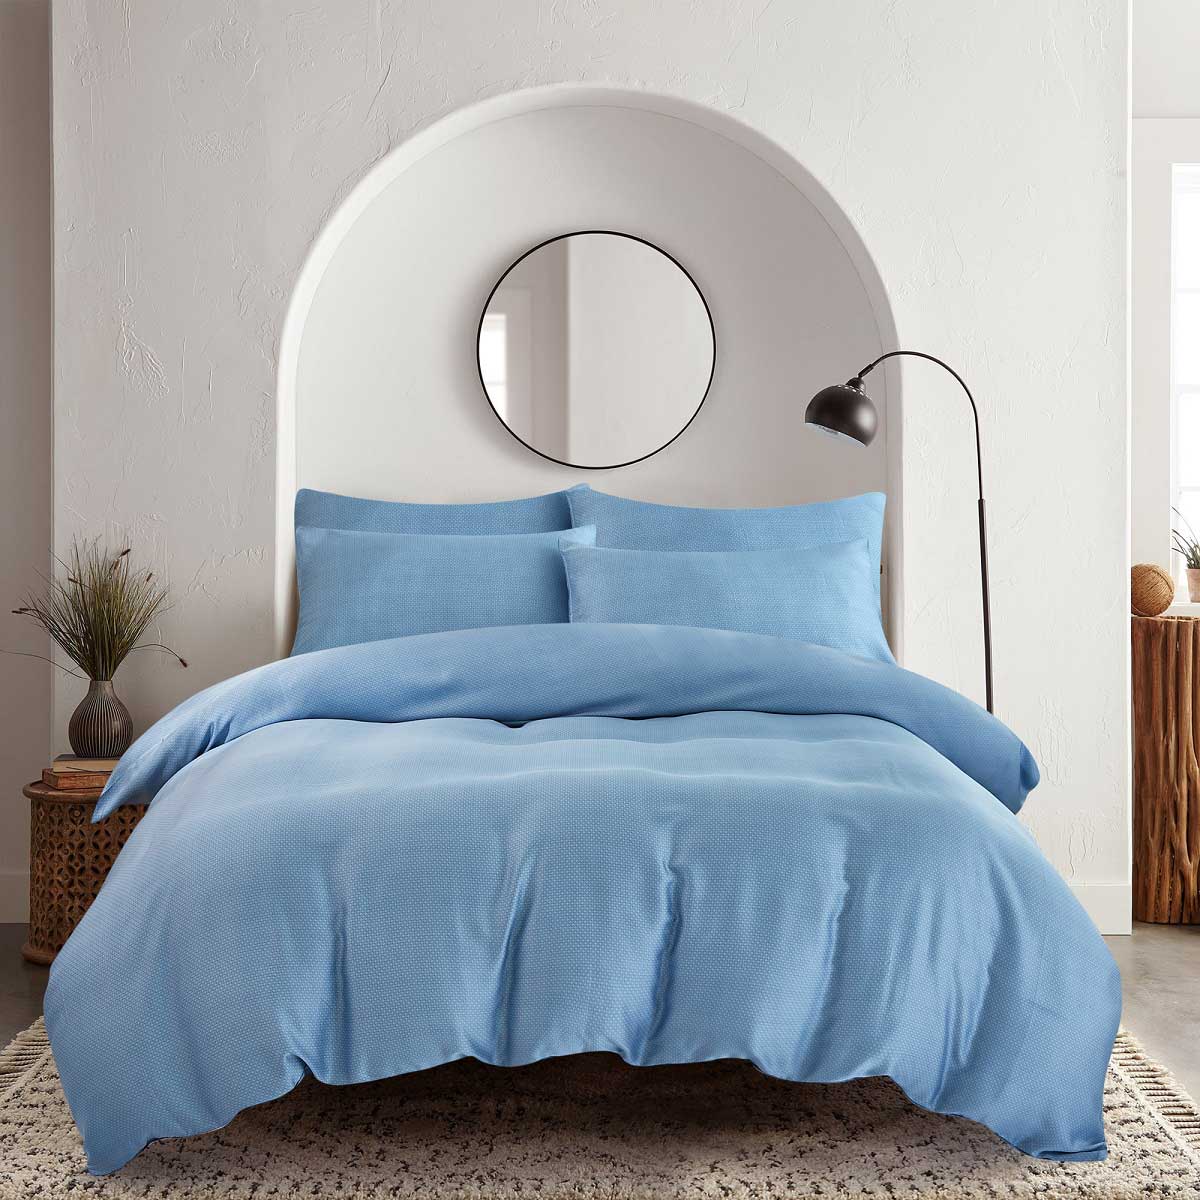 комплект постельного белья rustic blue полутораспальный полисатин синий Комплект постельного белья 1,5-спальный Pappel smooth blue